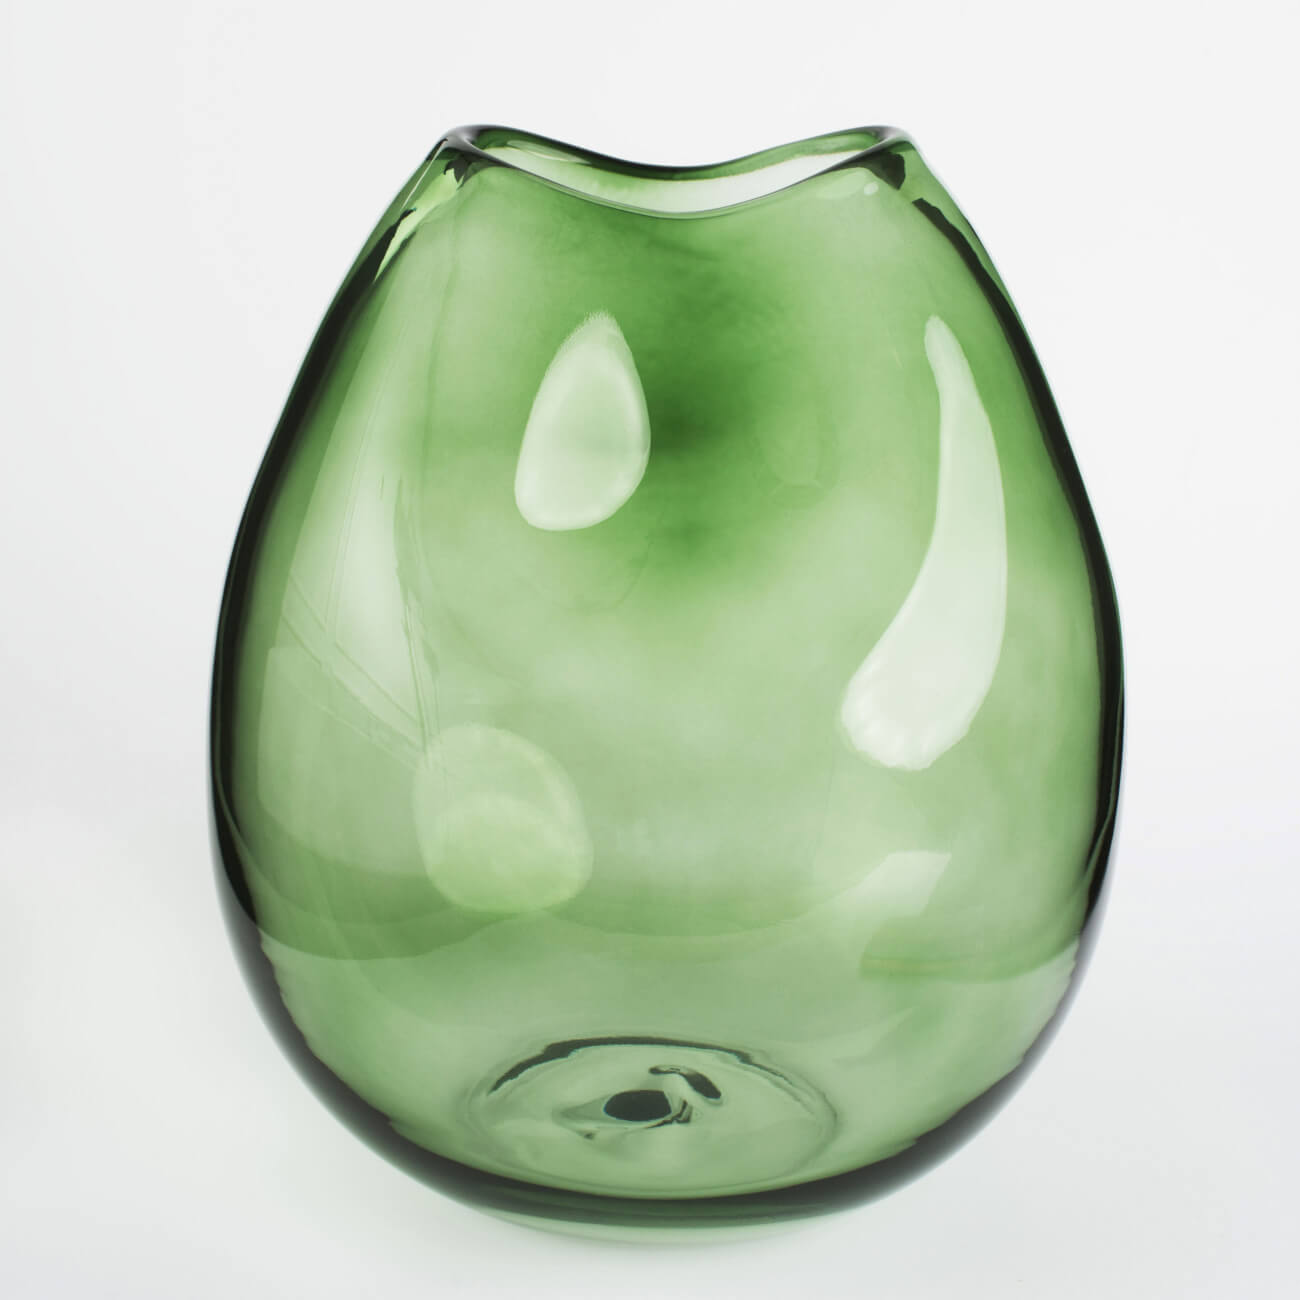 Flower vase, 25 cm, glass, green, Clear color изображение № 1